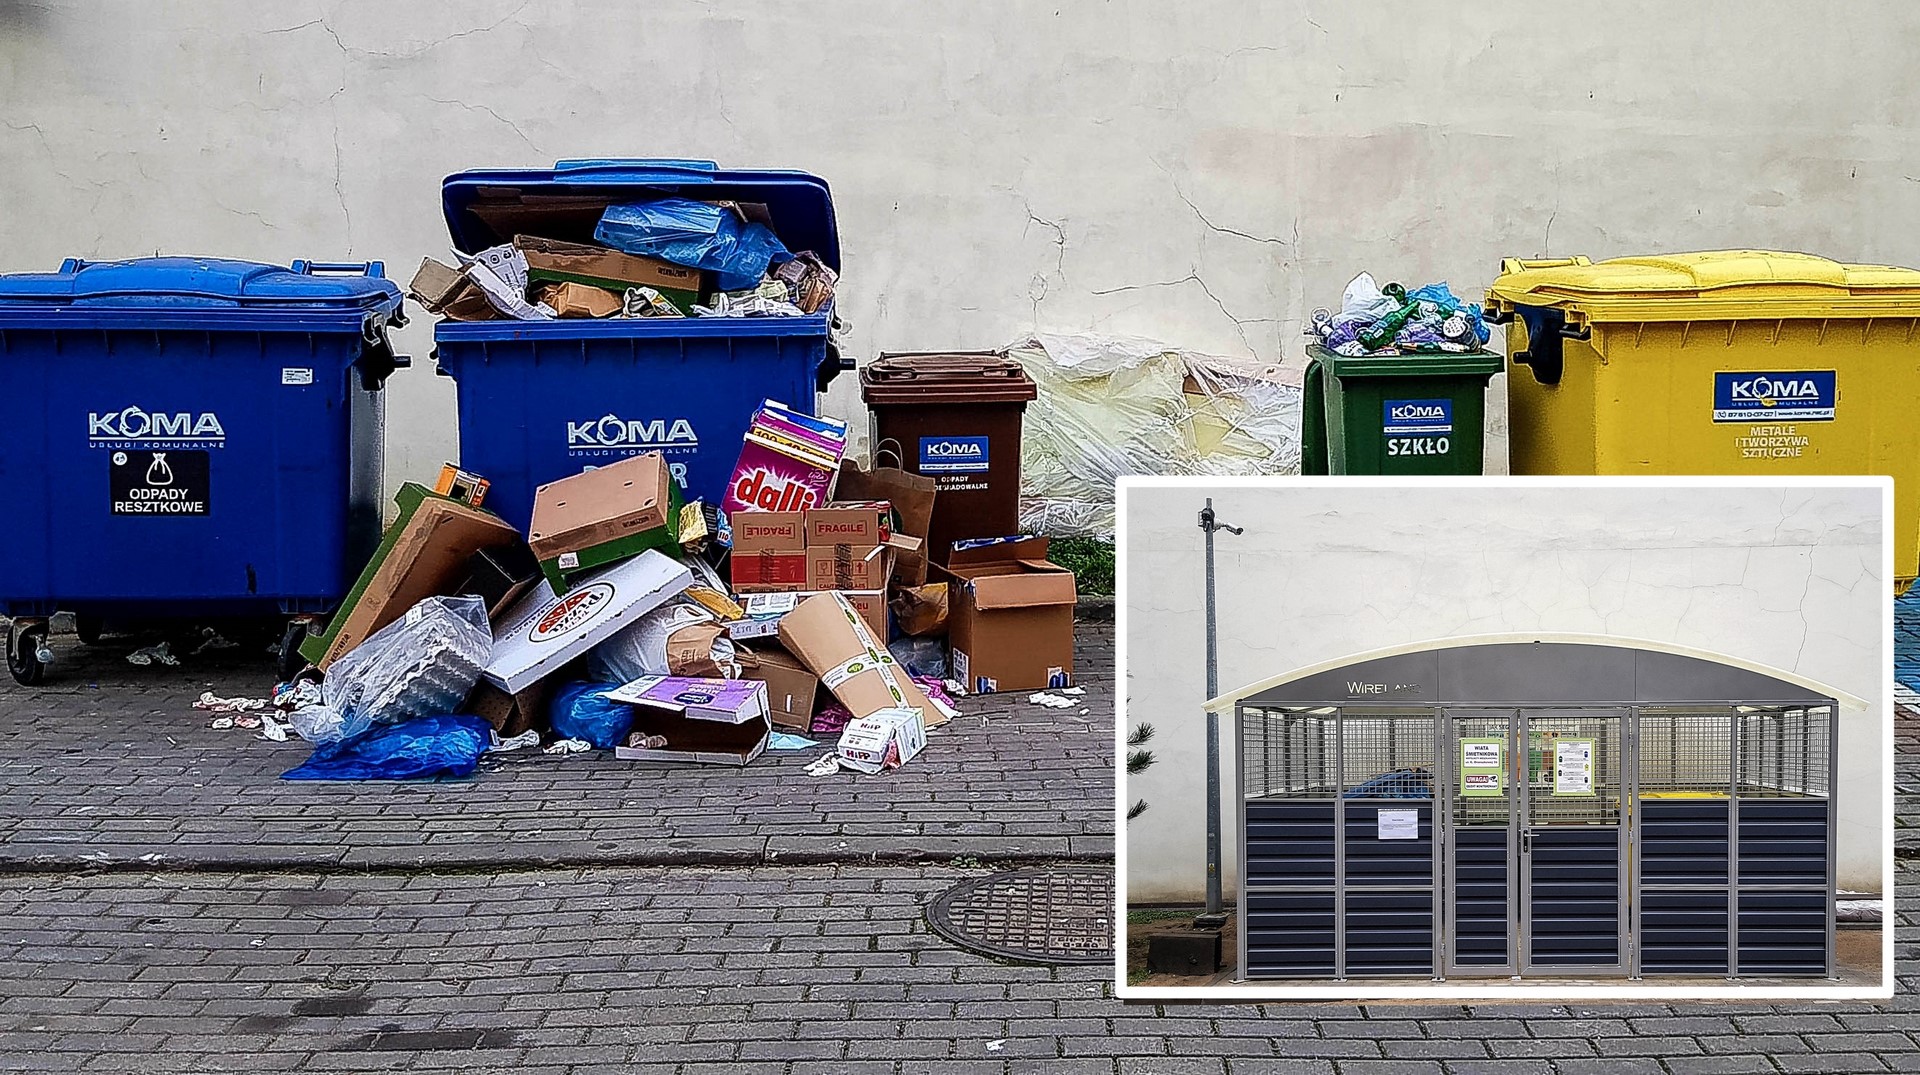 Czytelnicy piszą. Czy podrzucanie odpadów jest bezkarne?